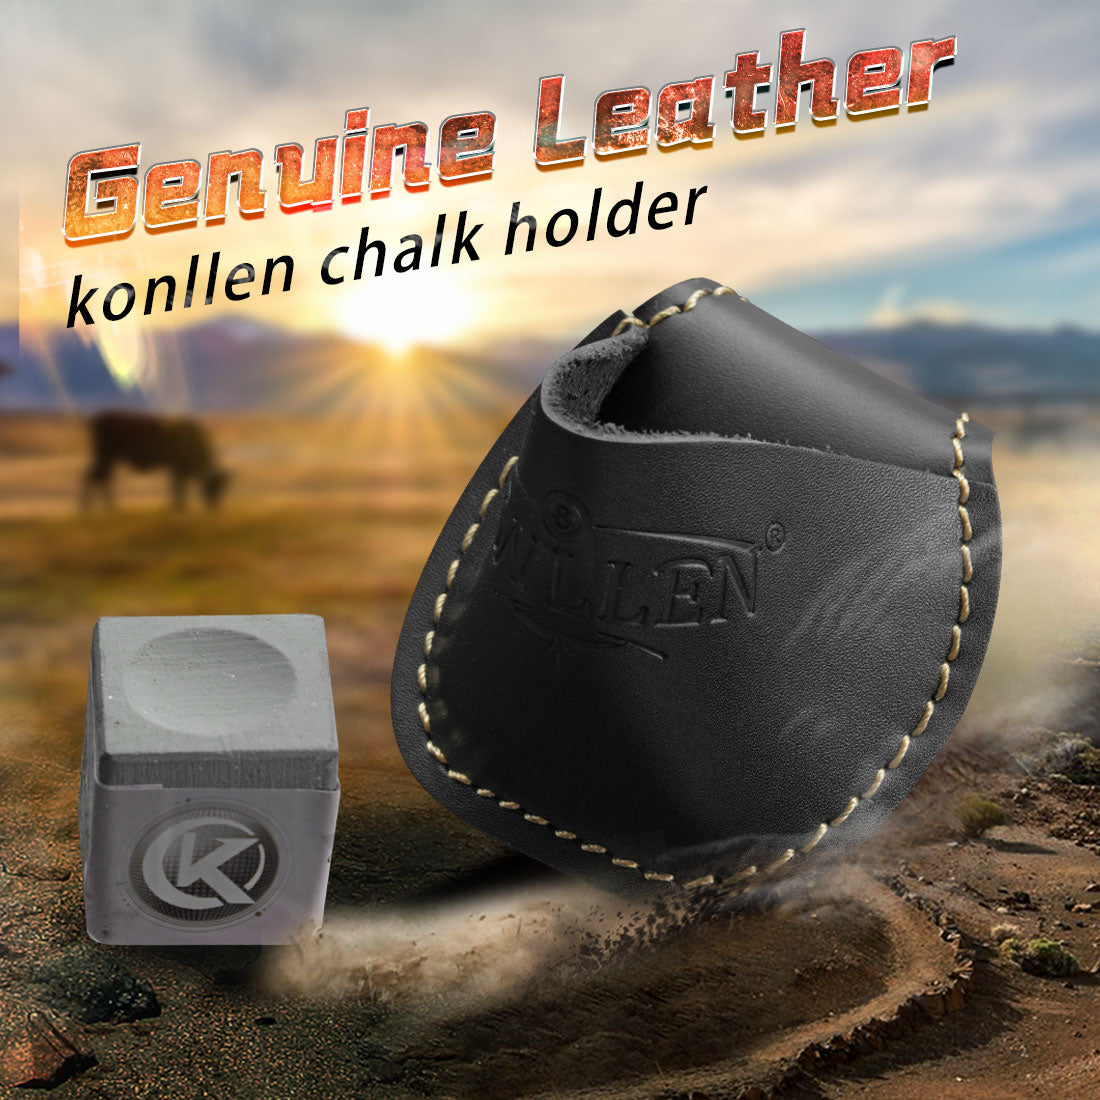 Genuine Leather Chalk Bag – KONLLEN billiards